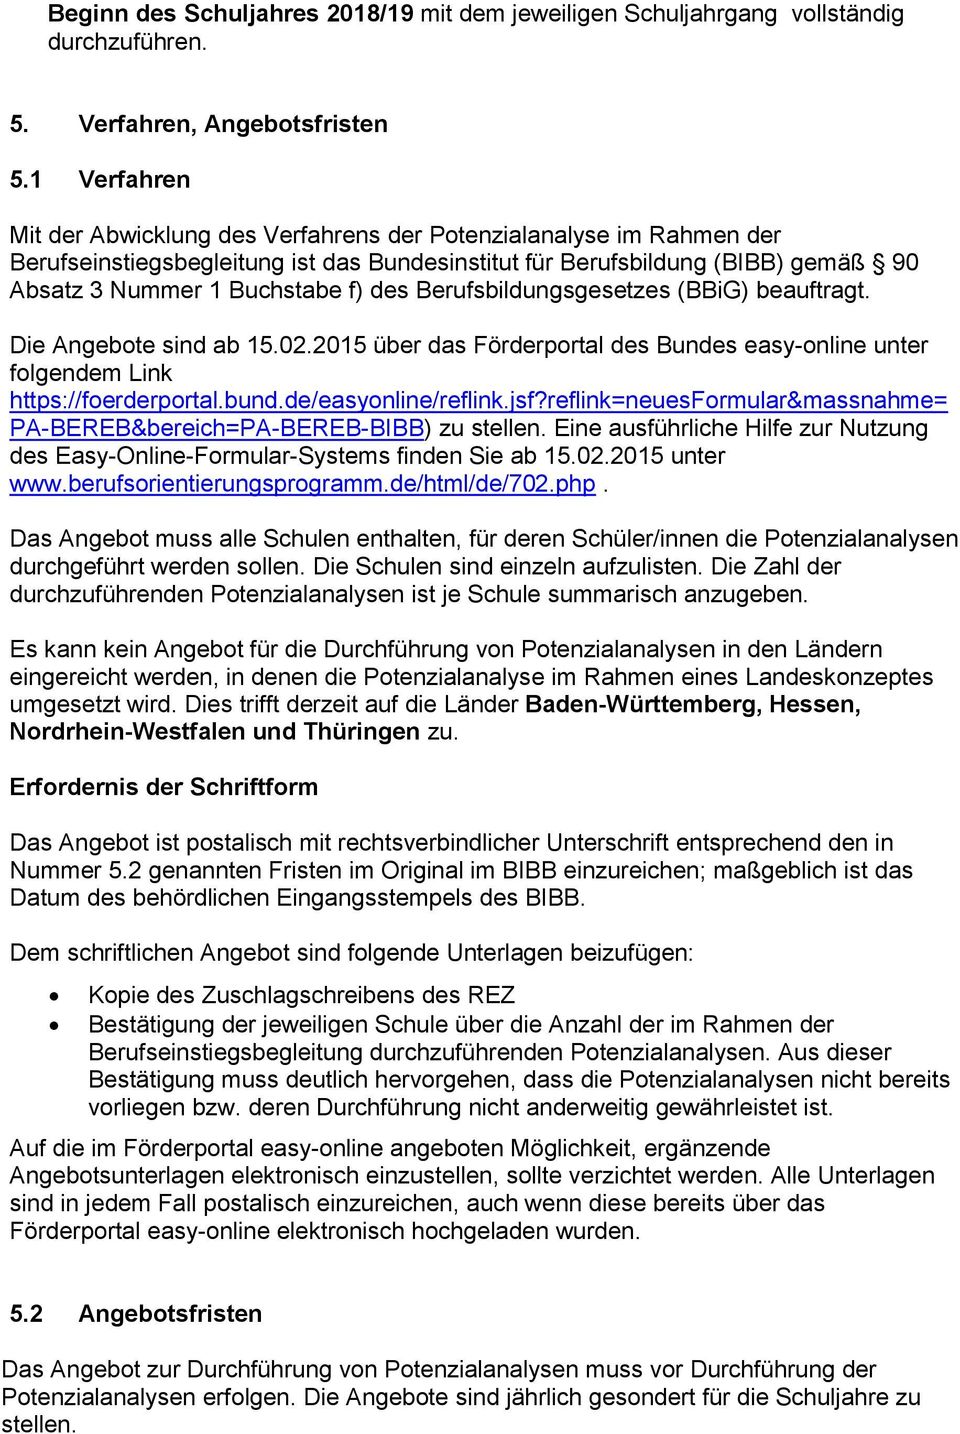 Berufsbildungsgesetzes (BBiG) beauftragt. Die Angebote sind ab 15.02.2015 über das Förderportal des Bundes easy-online unter folgendem Link https://foerderportal.bund.de/easyonline/reflink.jsf?